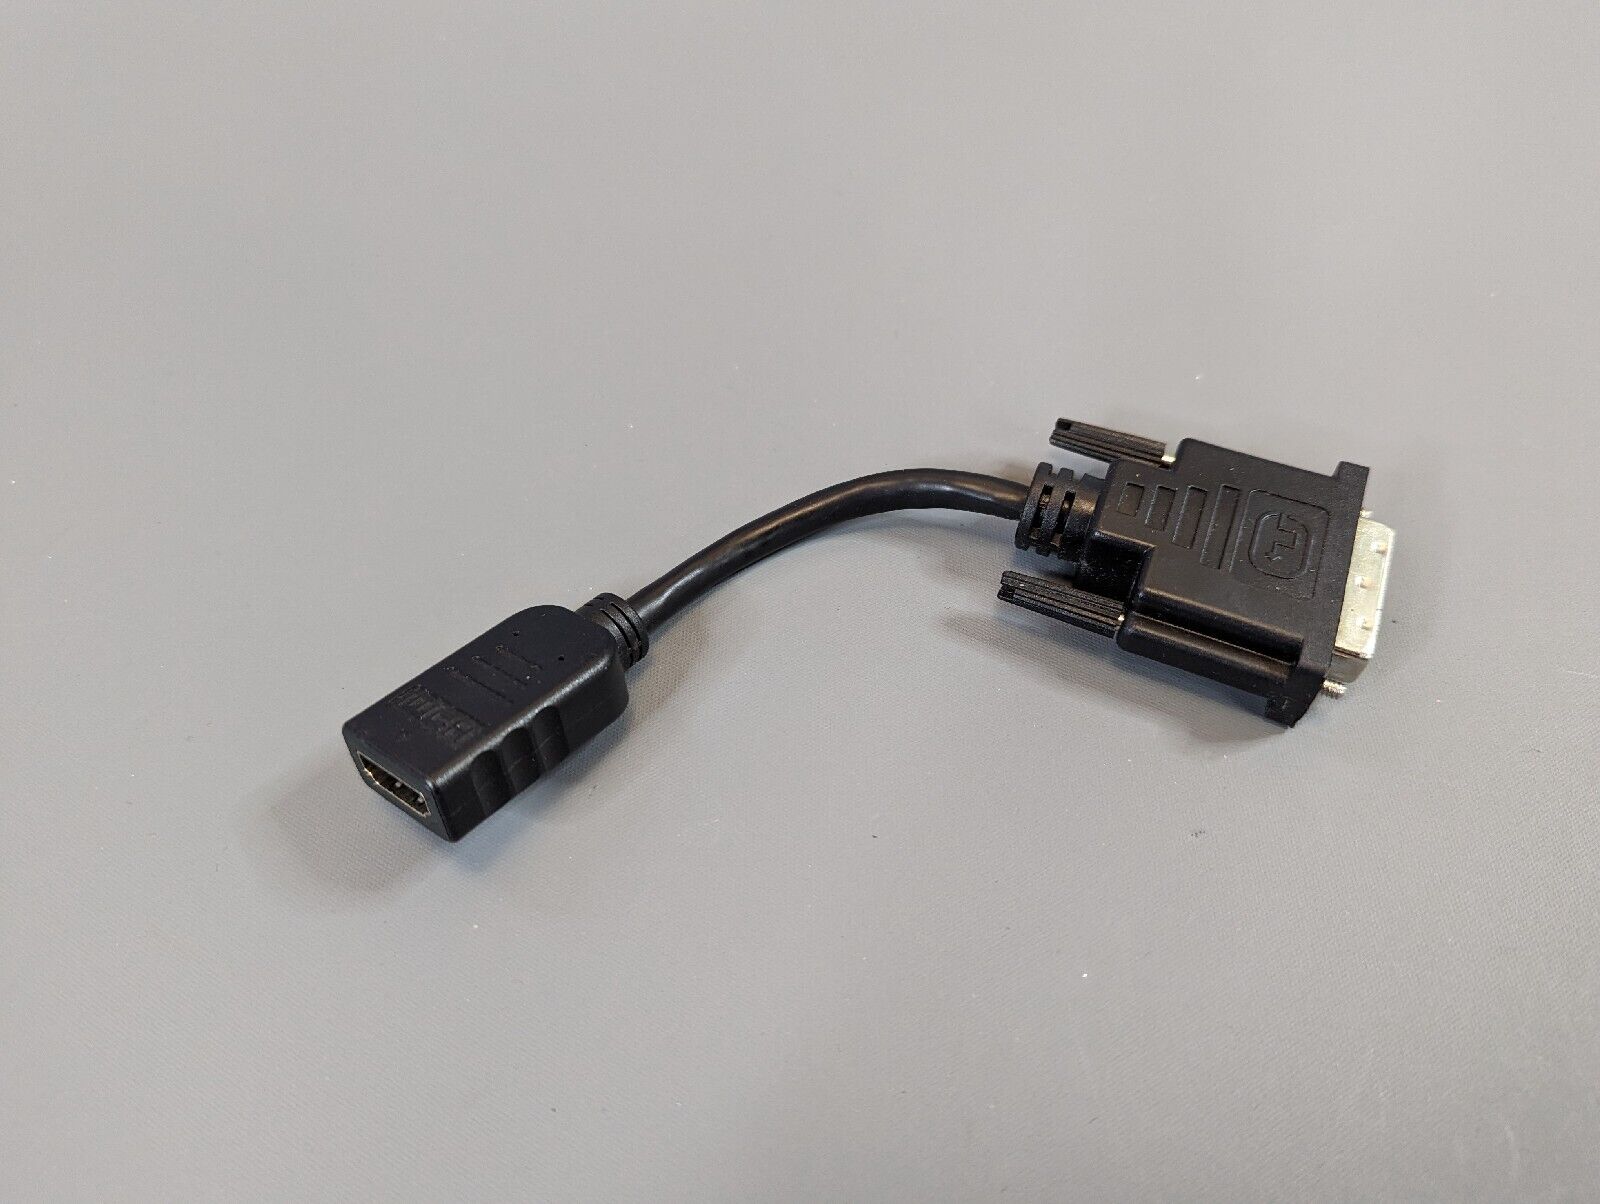 Alogic HDMI to DVI Cable Adapter Plug 1080p Plug